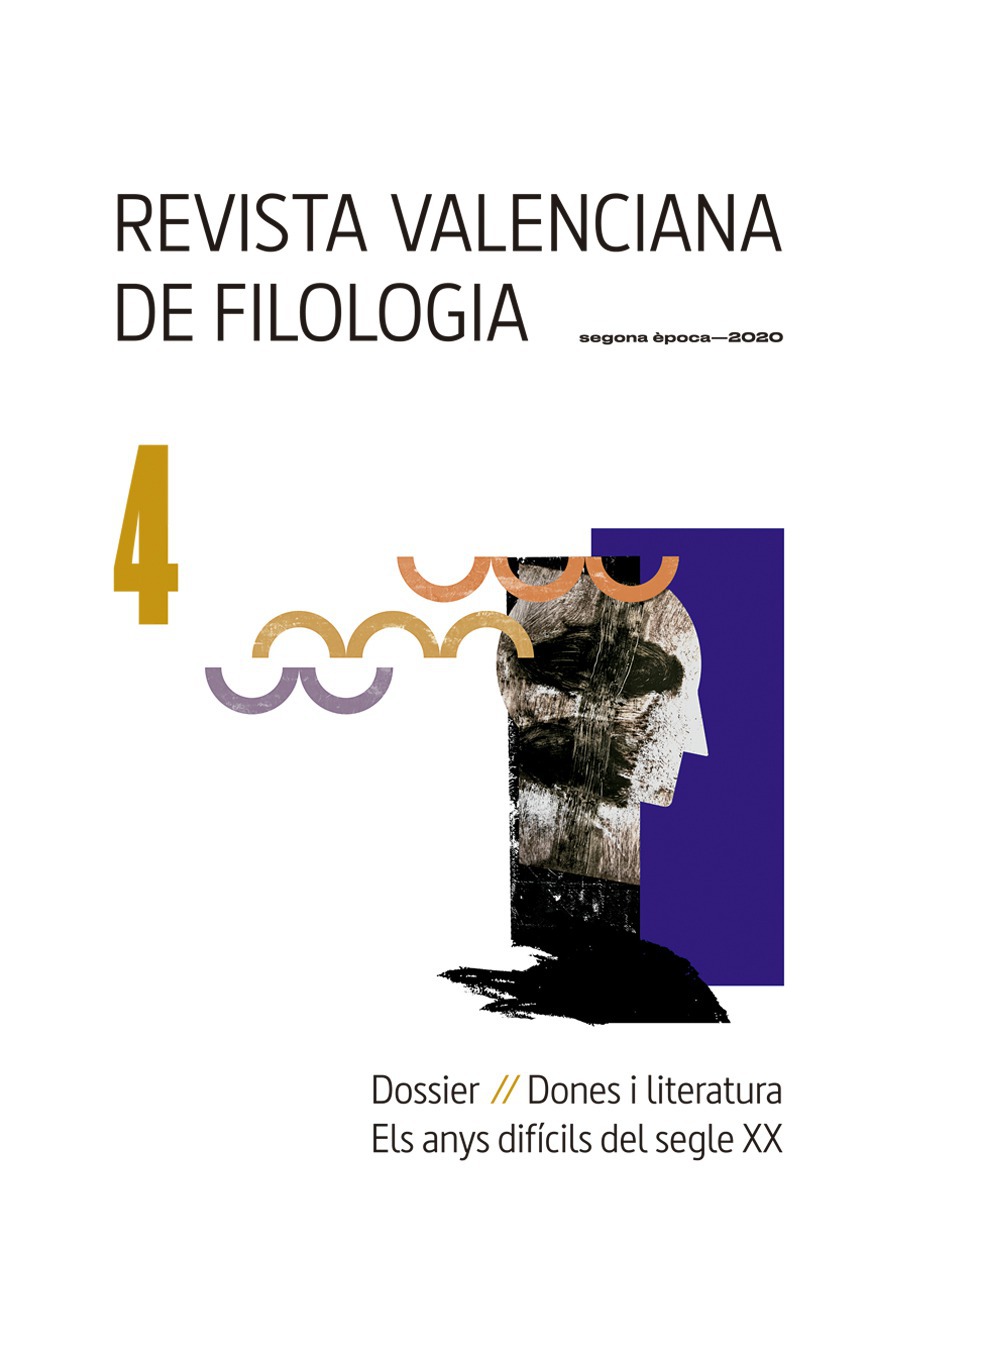 Ya está disponible el número 4 de la Revista Valenciana de Filologia